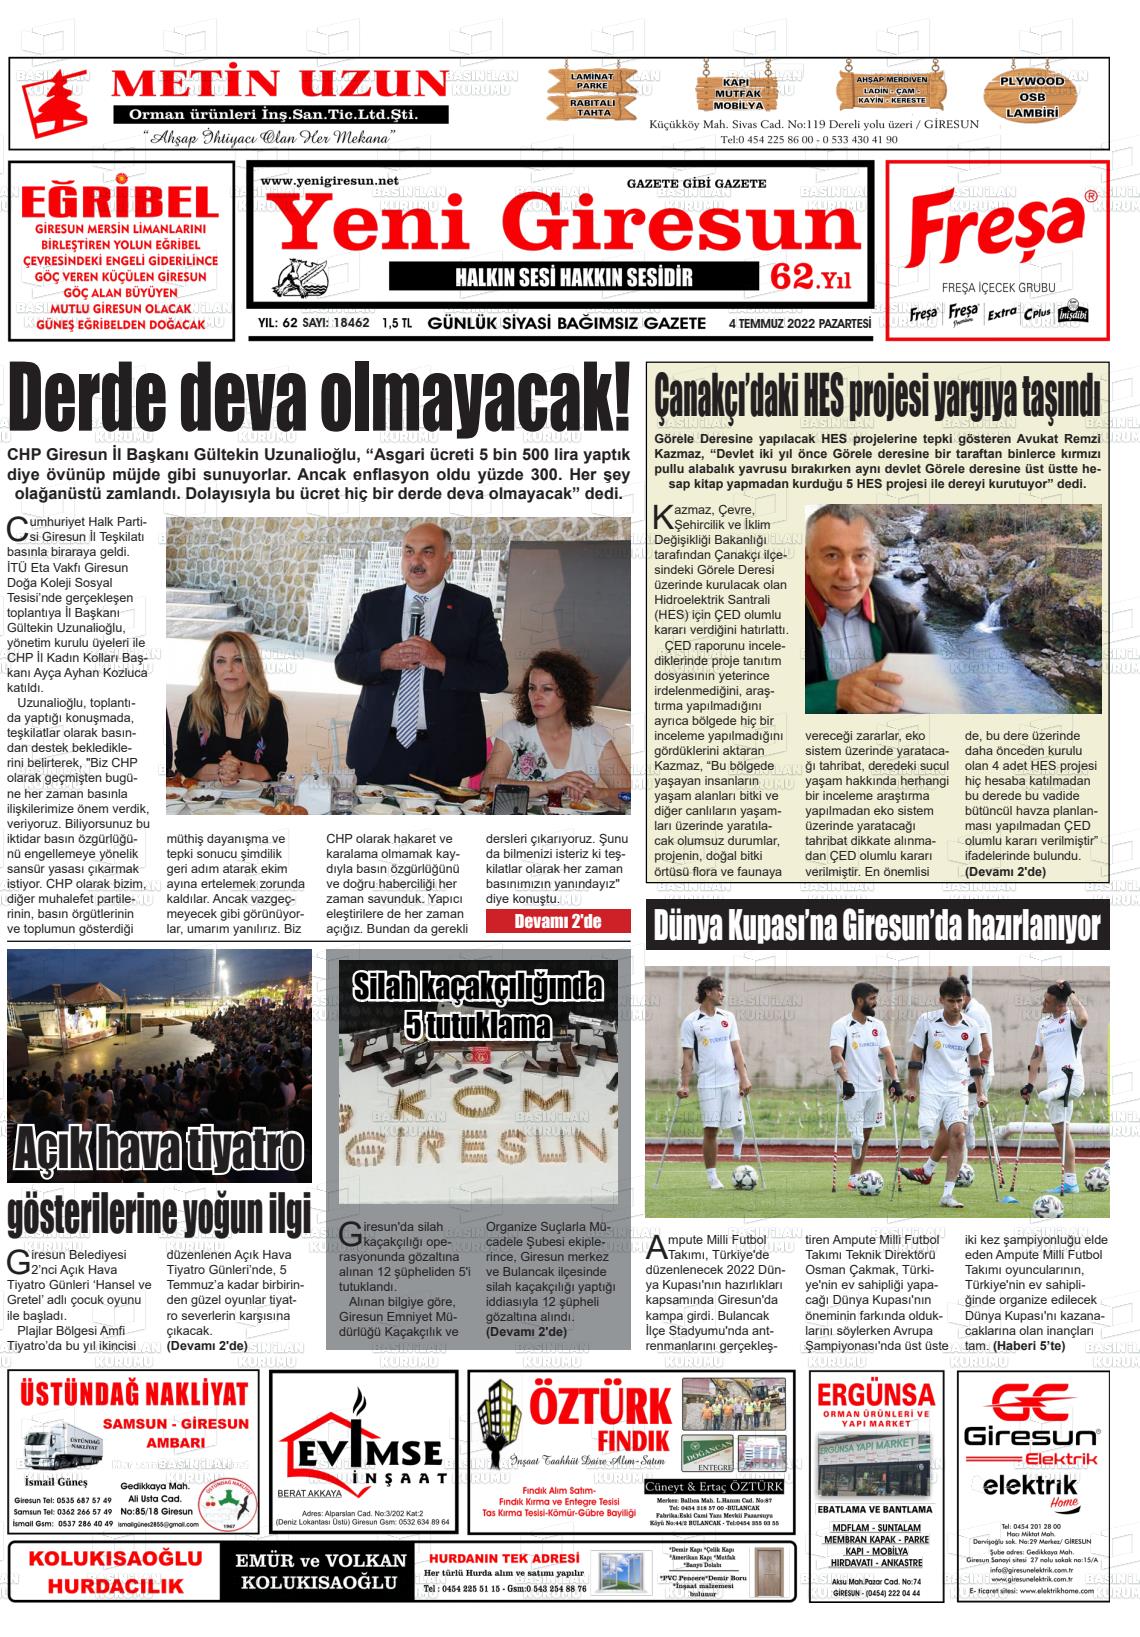 04 Temmuz 2022 Yeni Giresun Gazete Manşeti